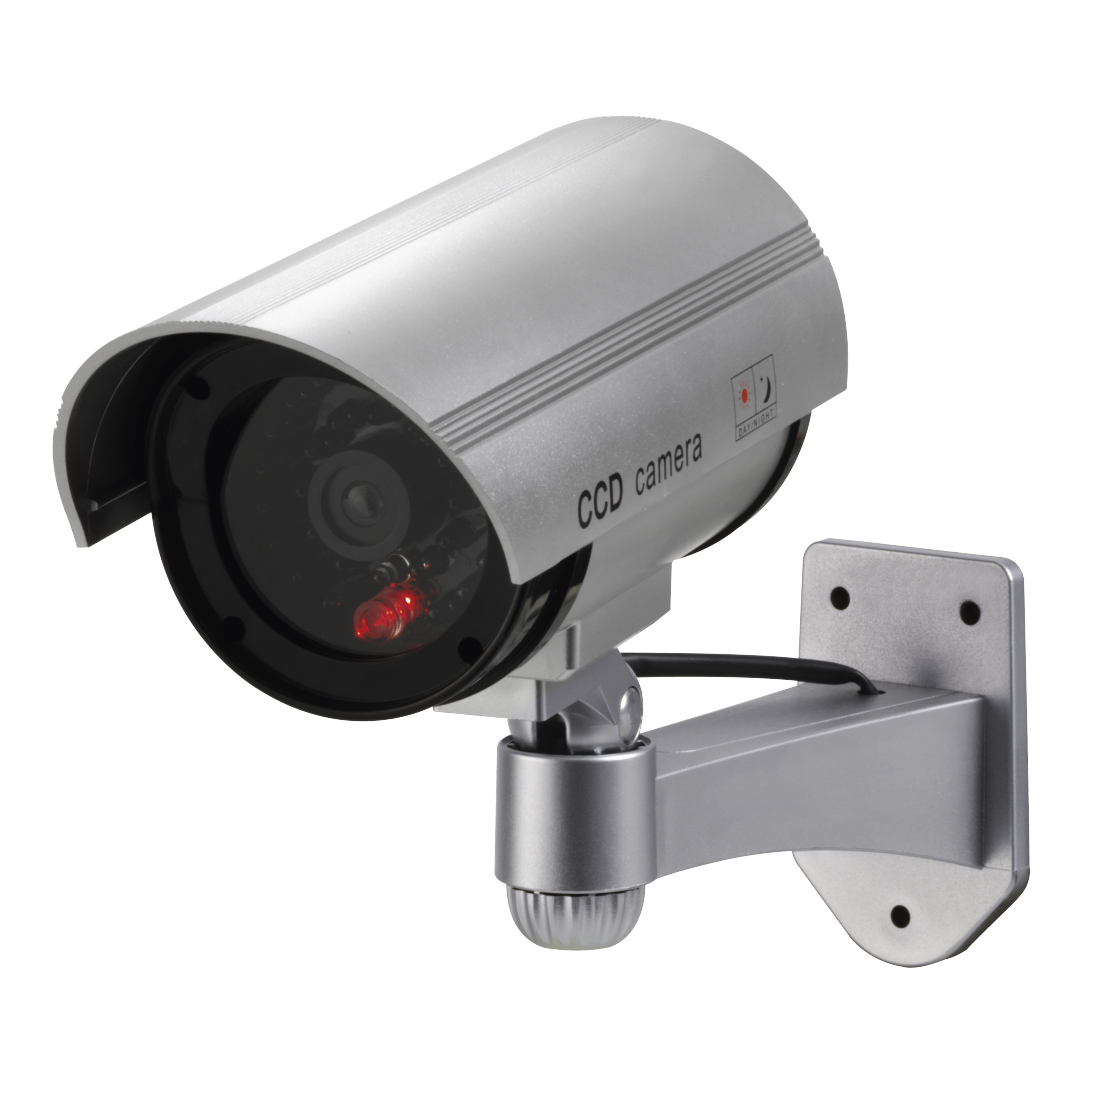 Камера с детектором движения. CCD Camera муляж. Муляж видеокамеры с датчиком движения. Муляж видеокамеры белая. Датчик видеонаблюдения размер.